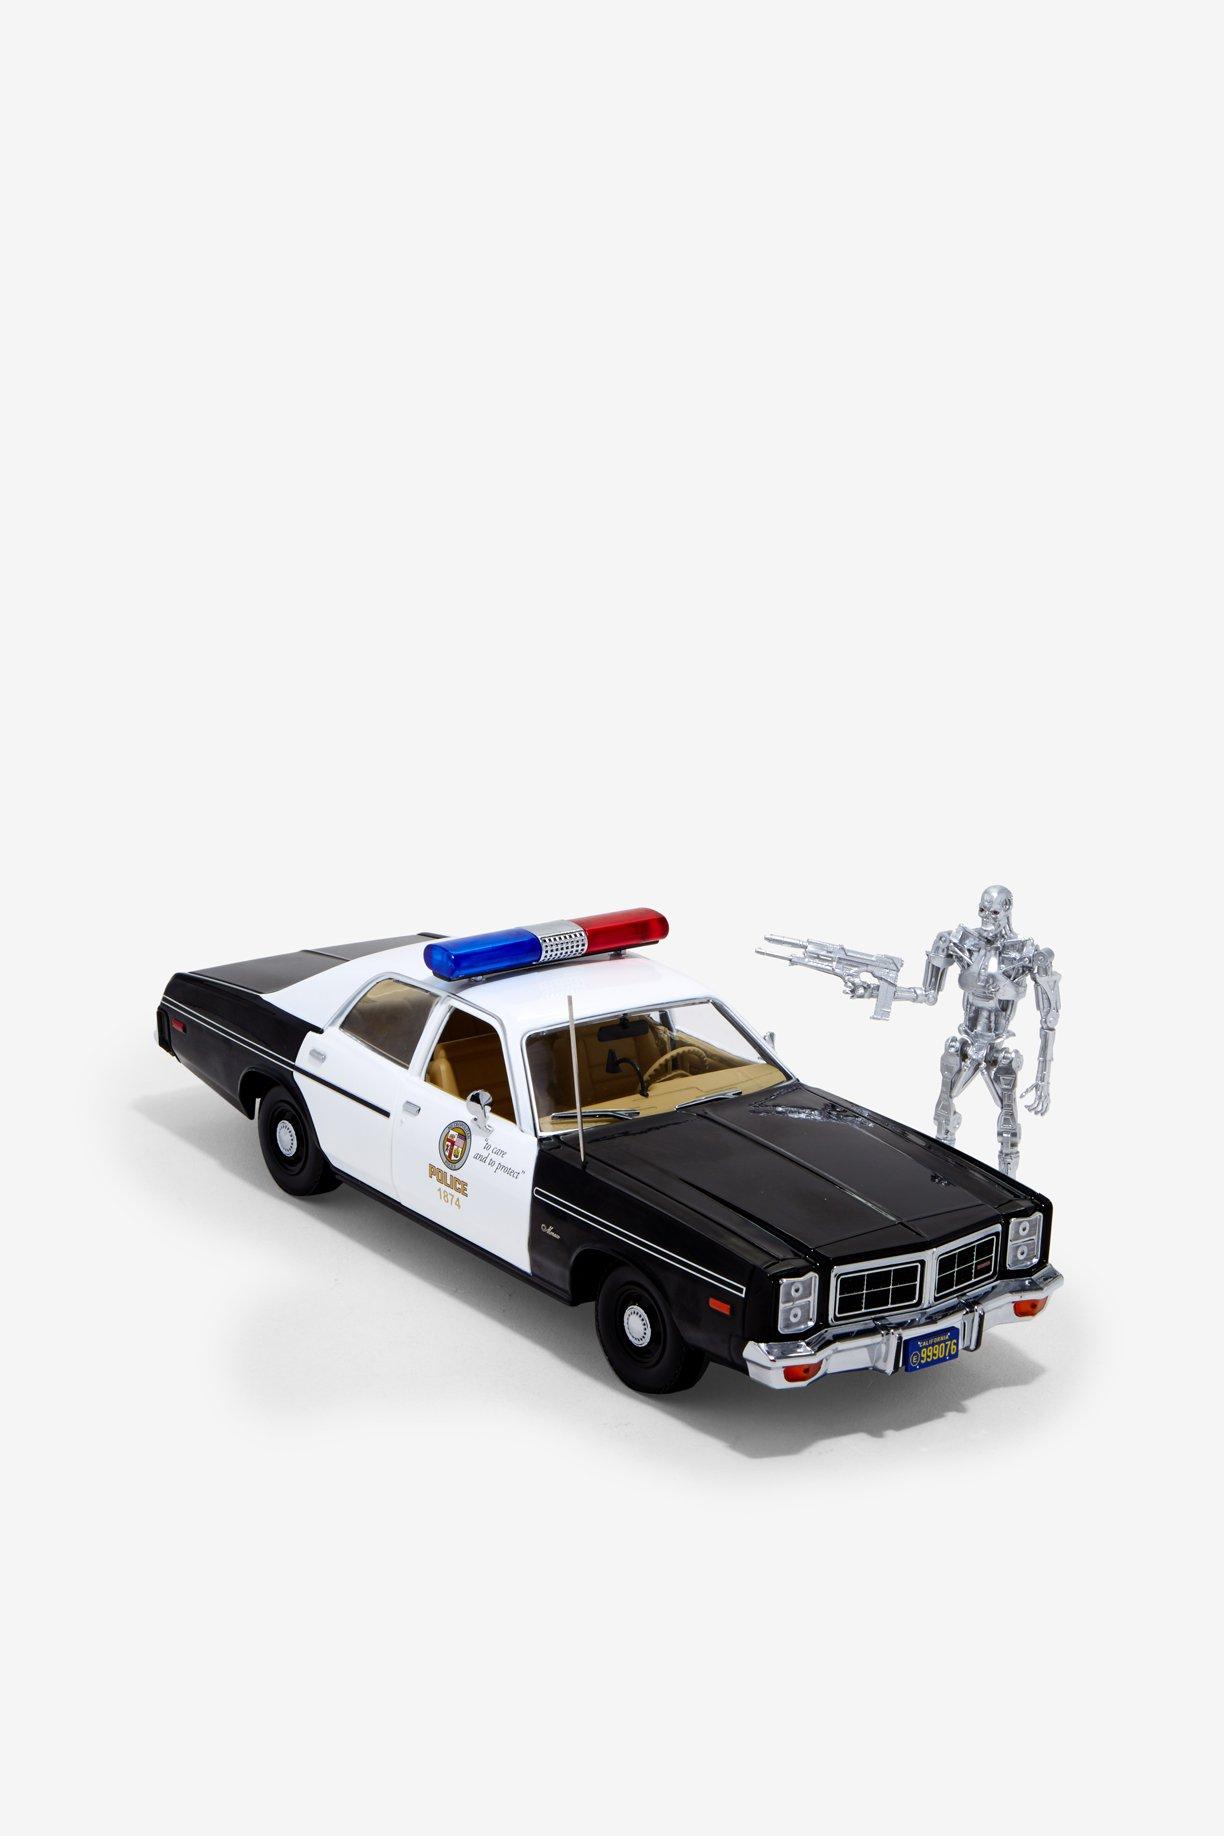 Artisan The Terminator 1977 Dodge Metropolitan Police T-800 Endoskeleton Figure, , alternate